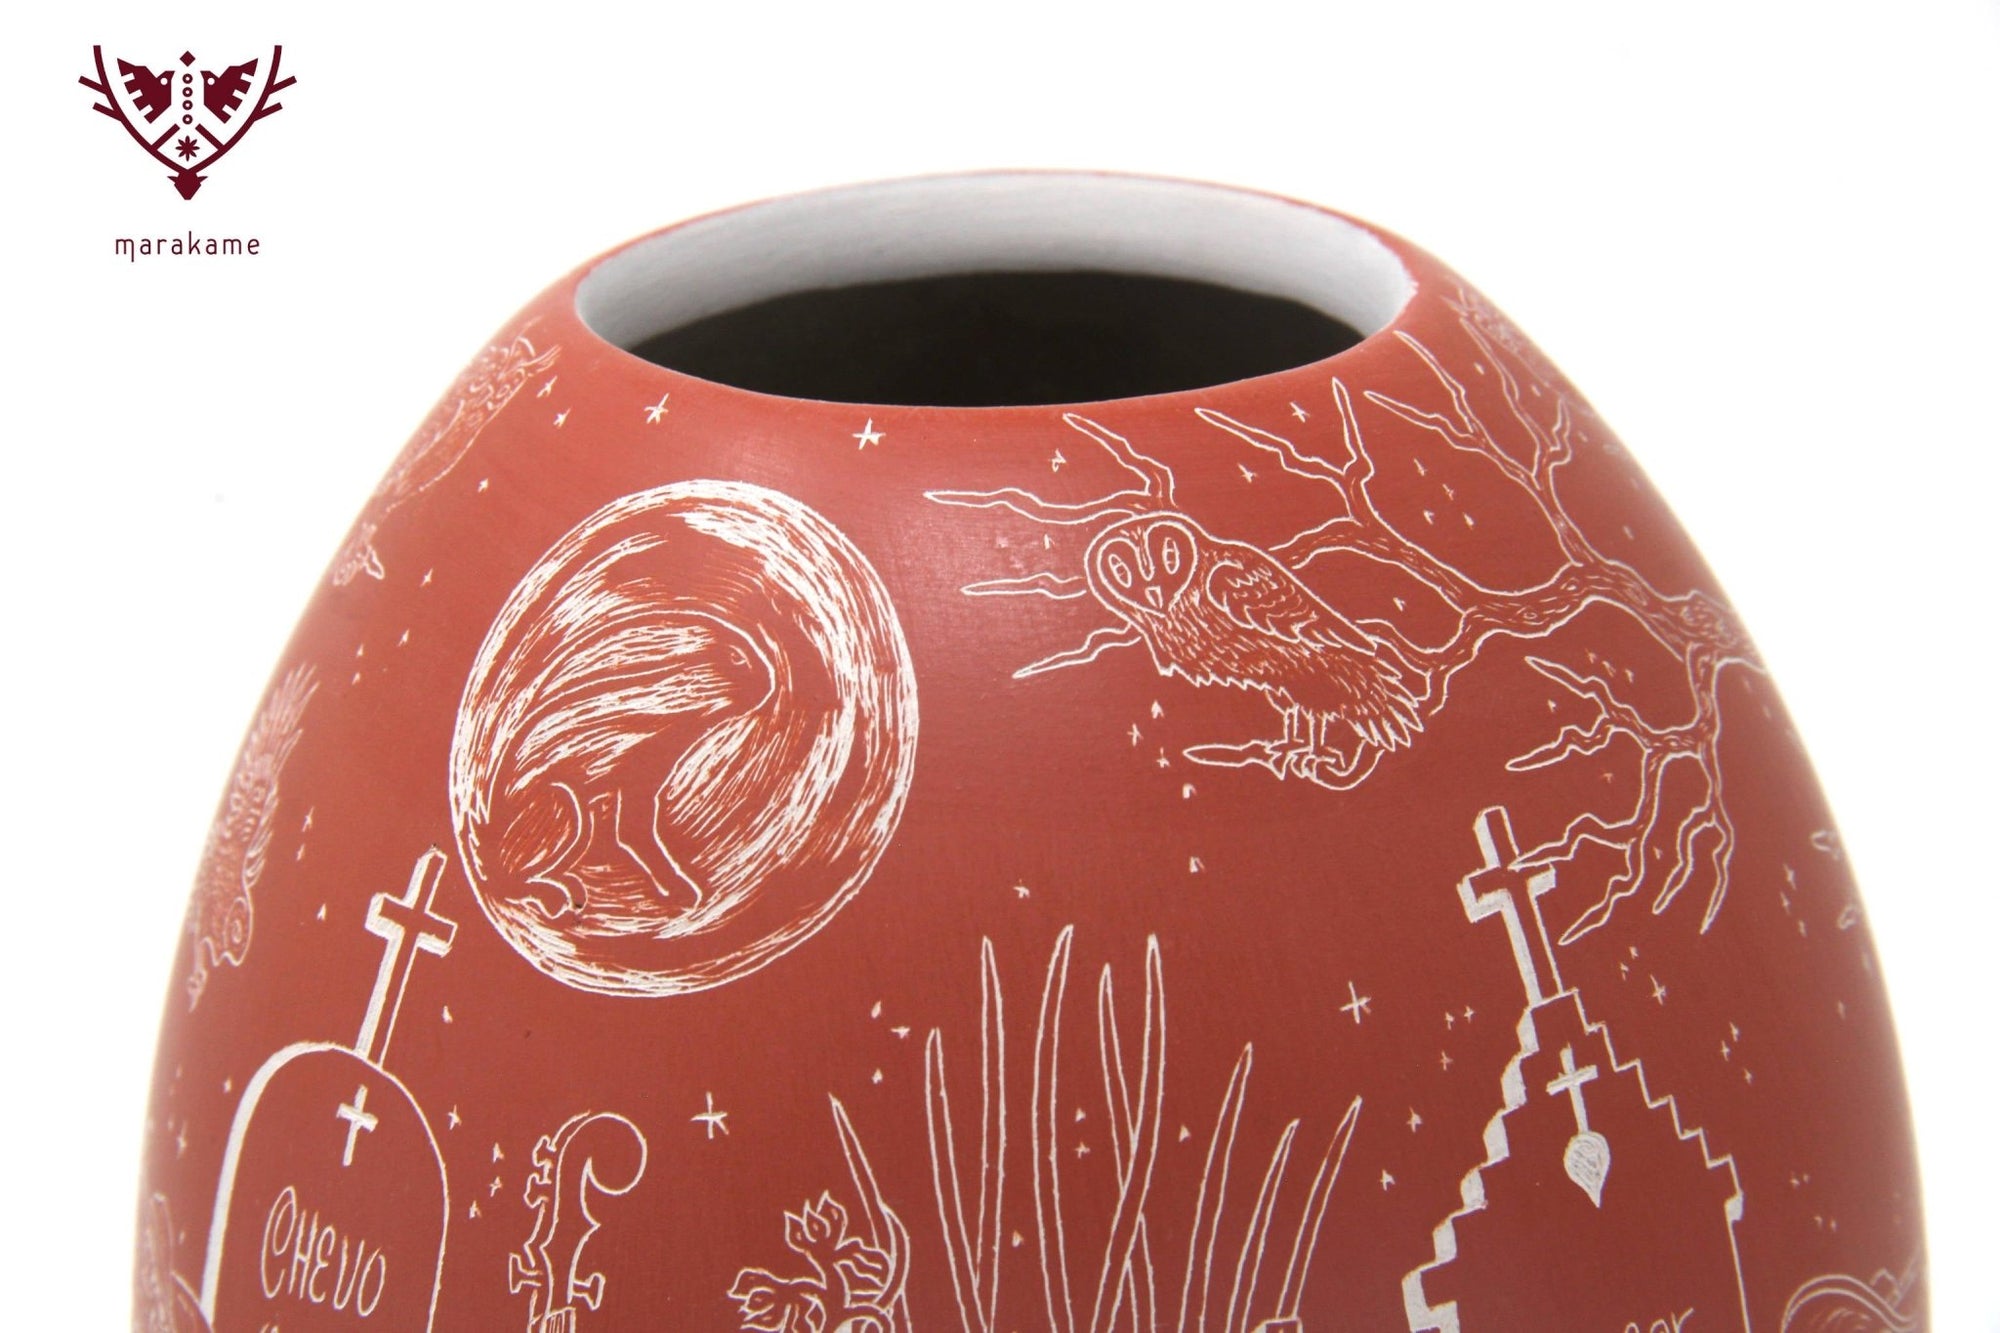 Mata Ortiz Keramik - Tag der Toten - Tanzen zum Leben / Nacht - Huichol-Kunst - Marakame